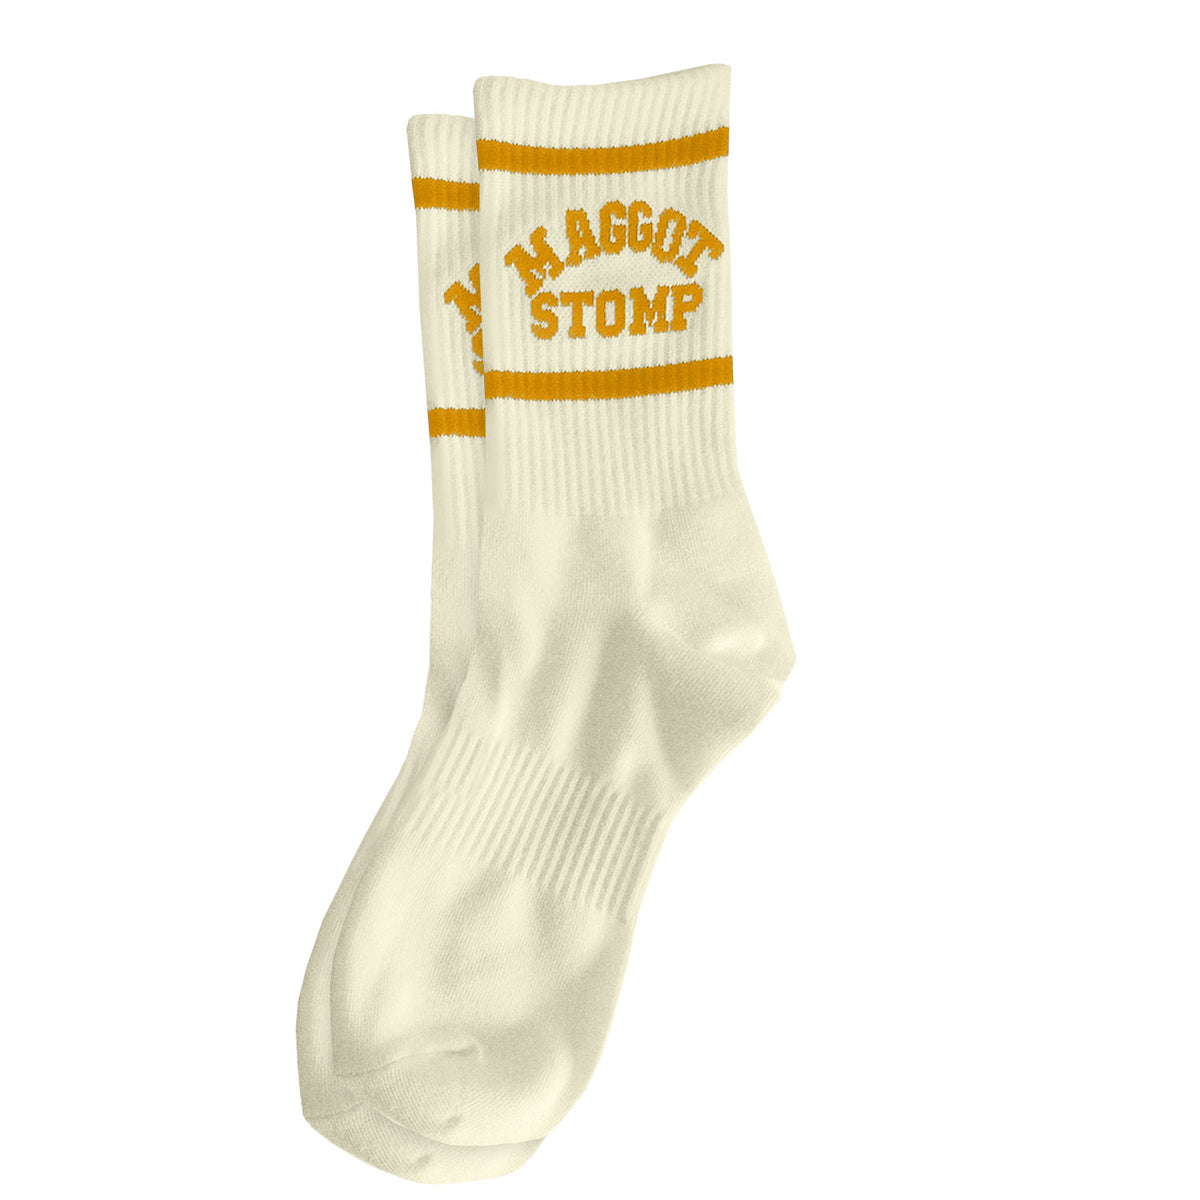 Maggot Stomp Gold Logo Socks